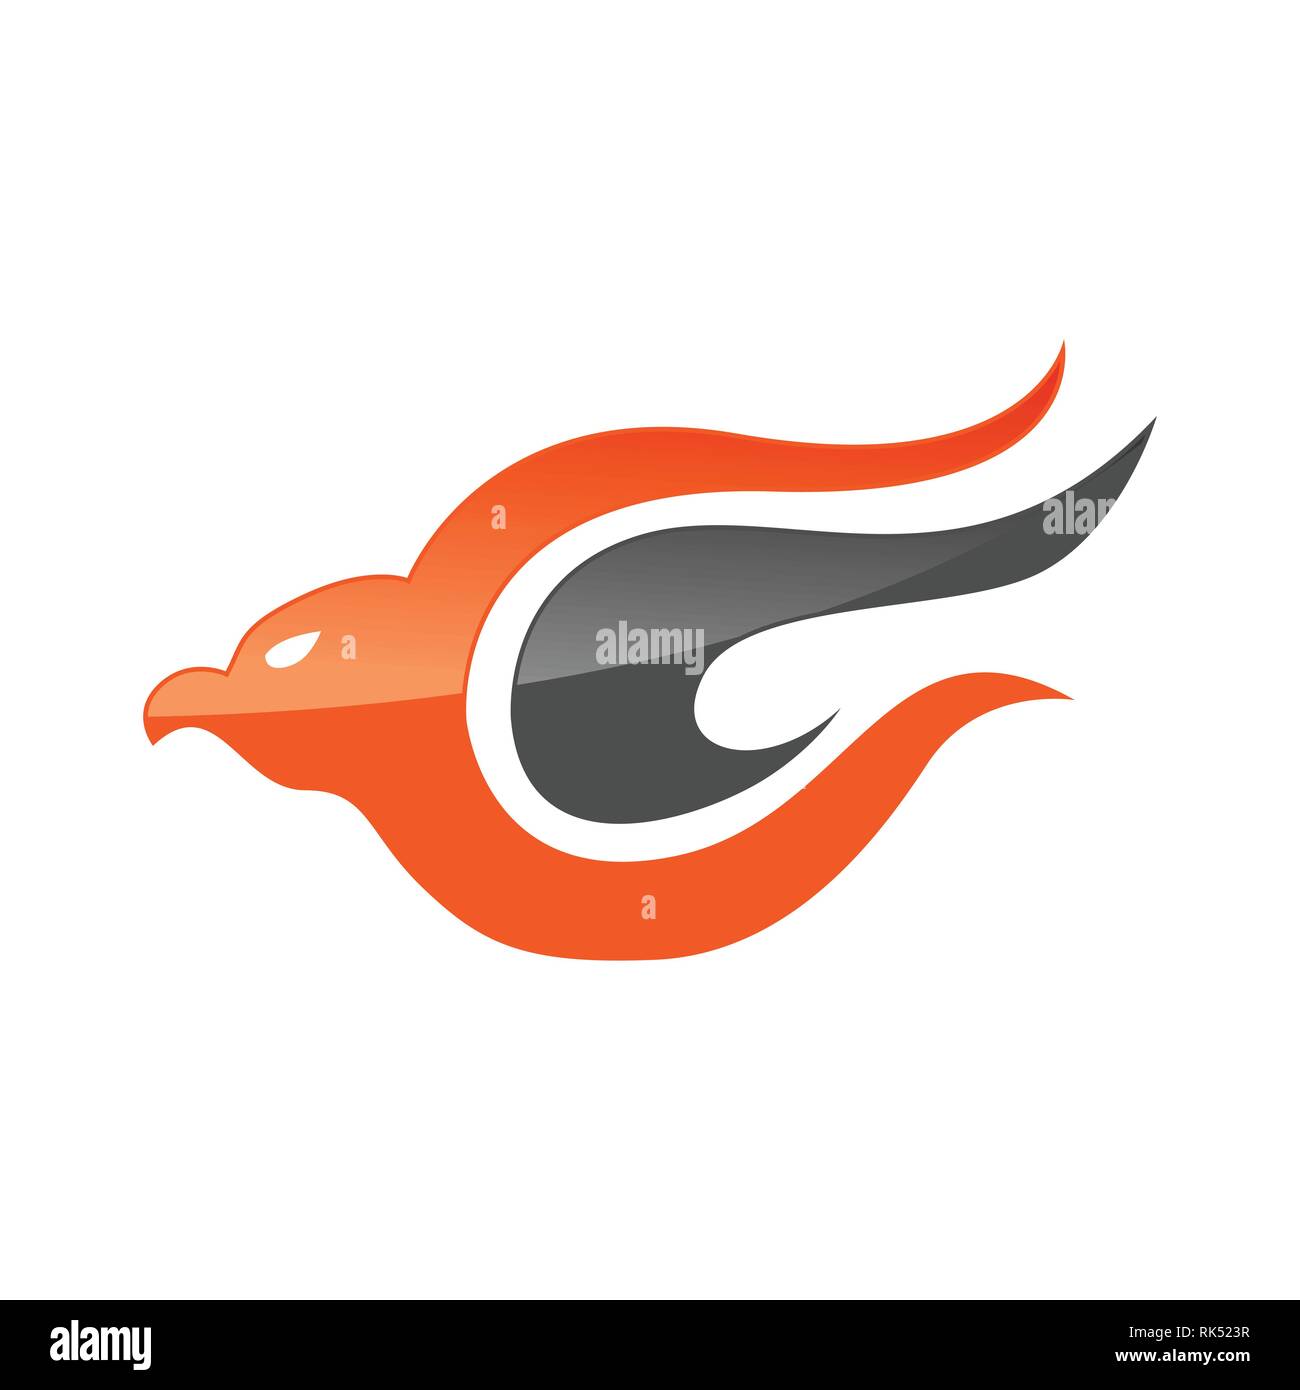 Abstract eagle bird ou fantaisie logo eagle modèle pour la sécurité ou airlines company Illustration de Vecteur